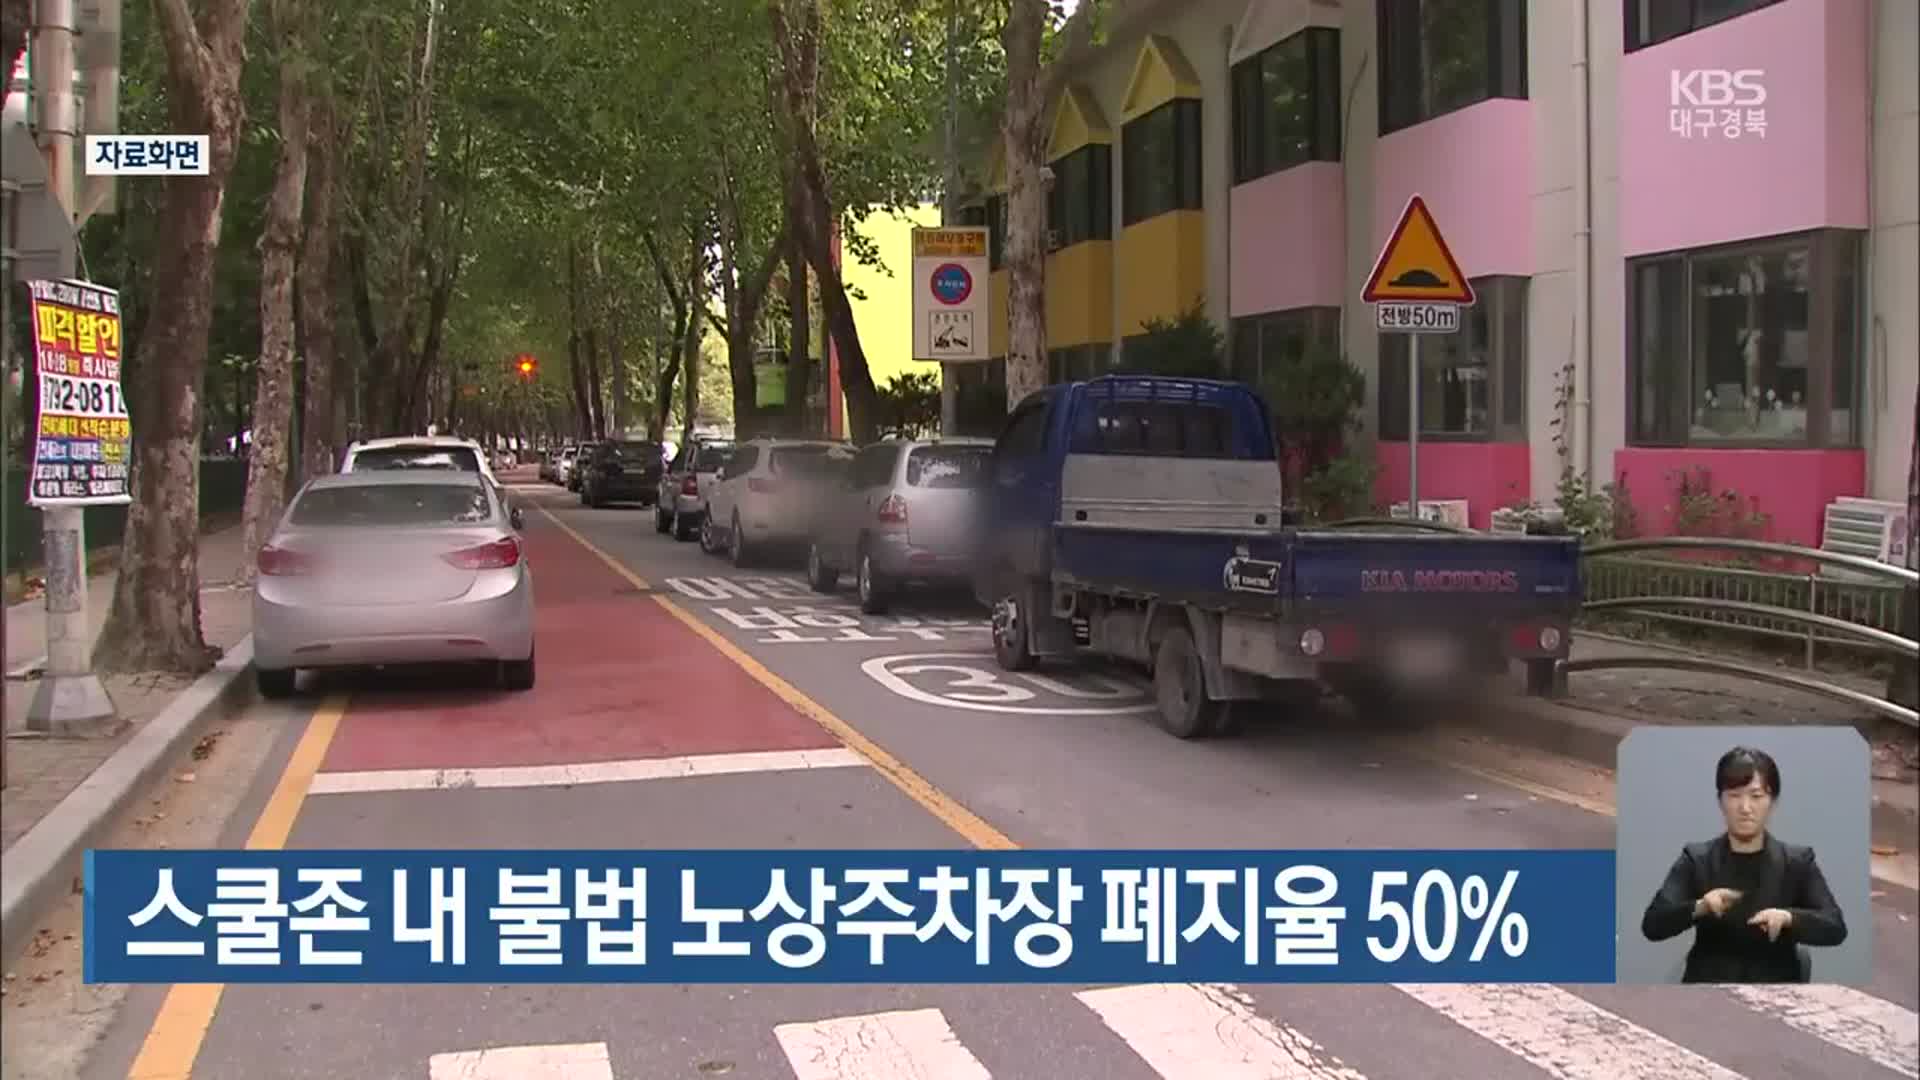 스쿨존 내 불법 노상주차장 폐지율 50%